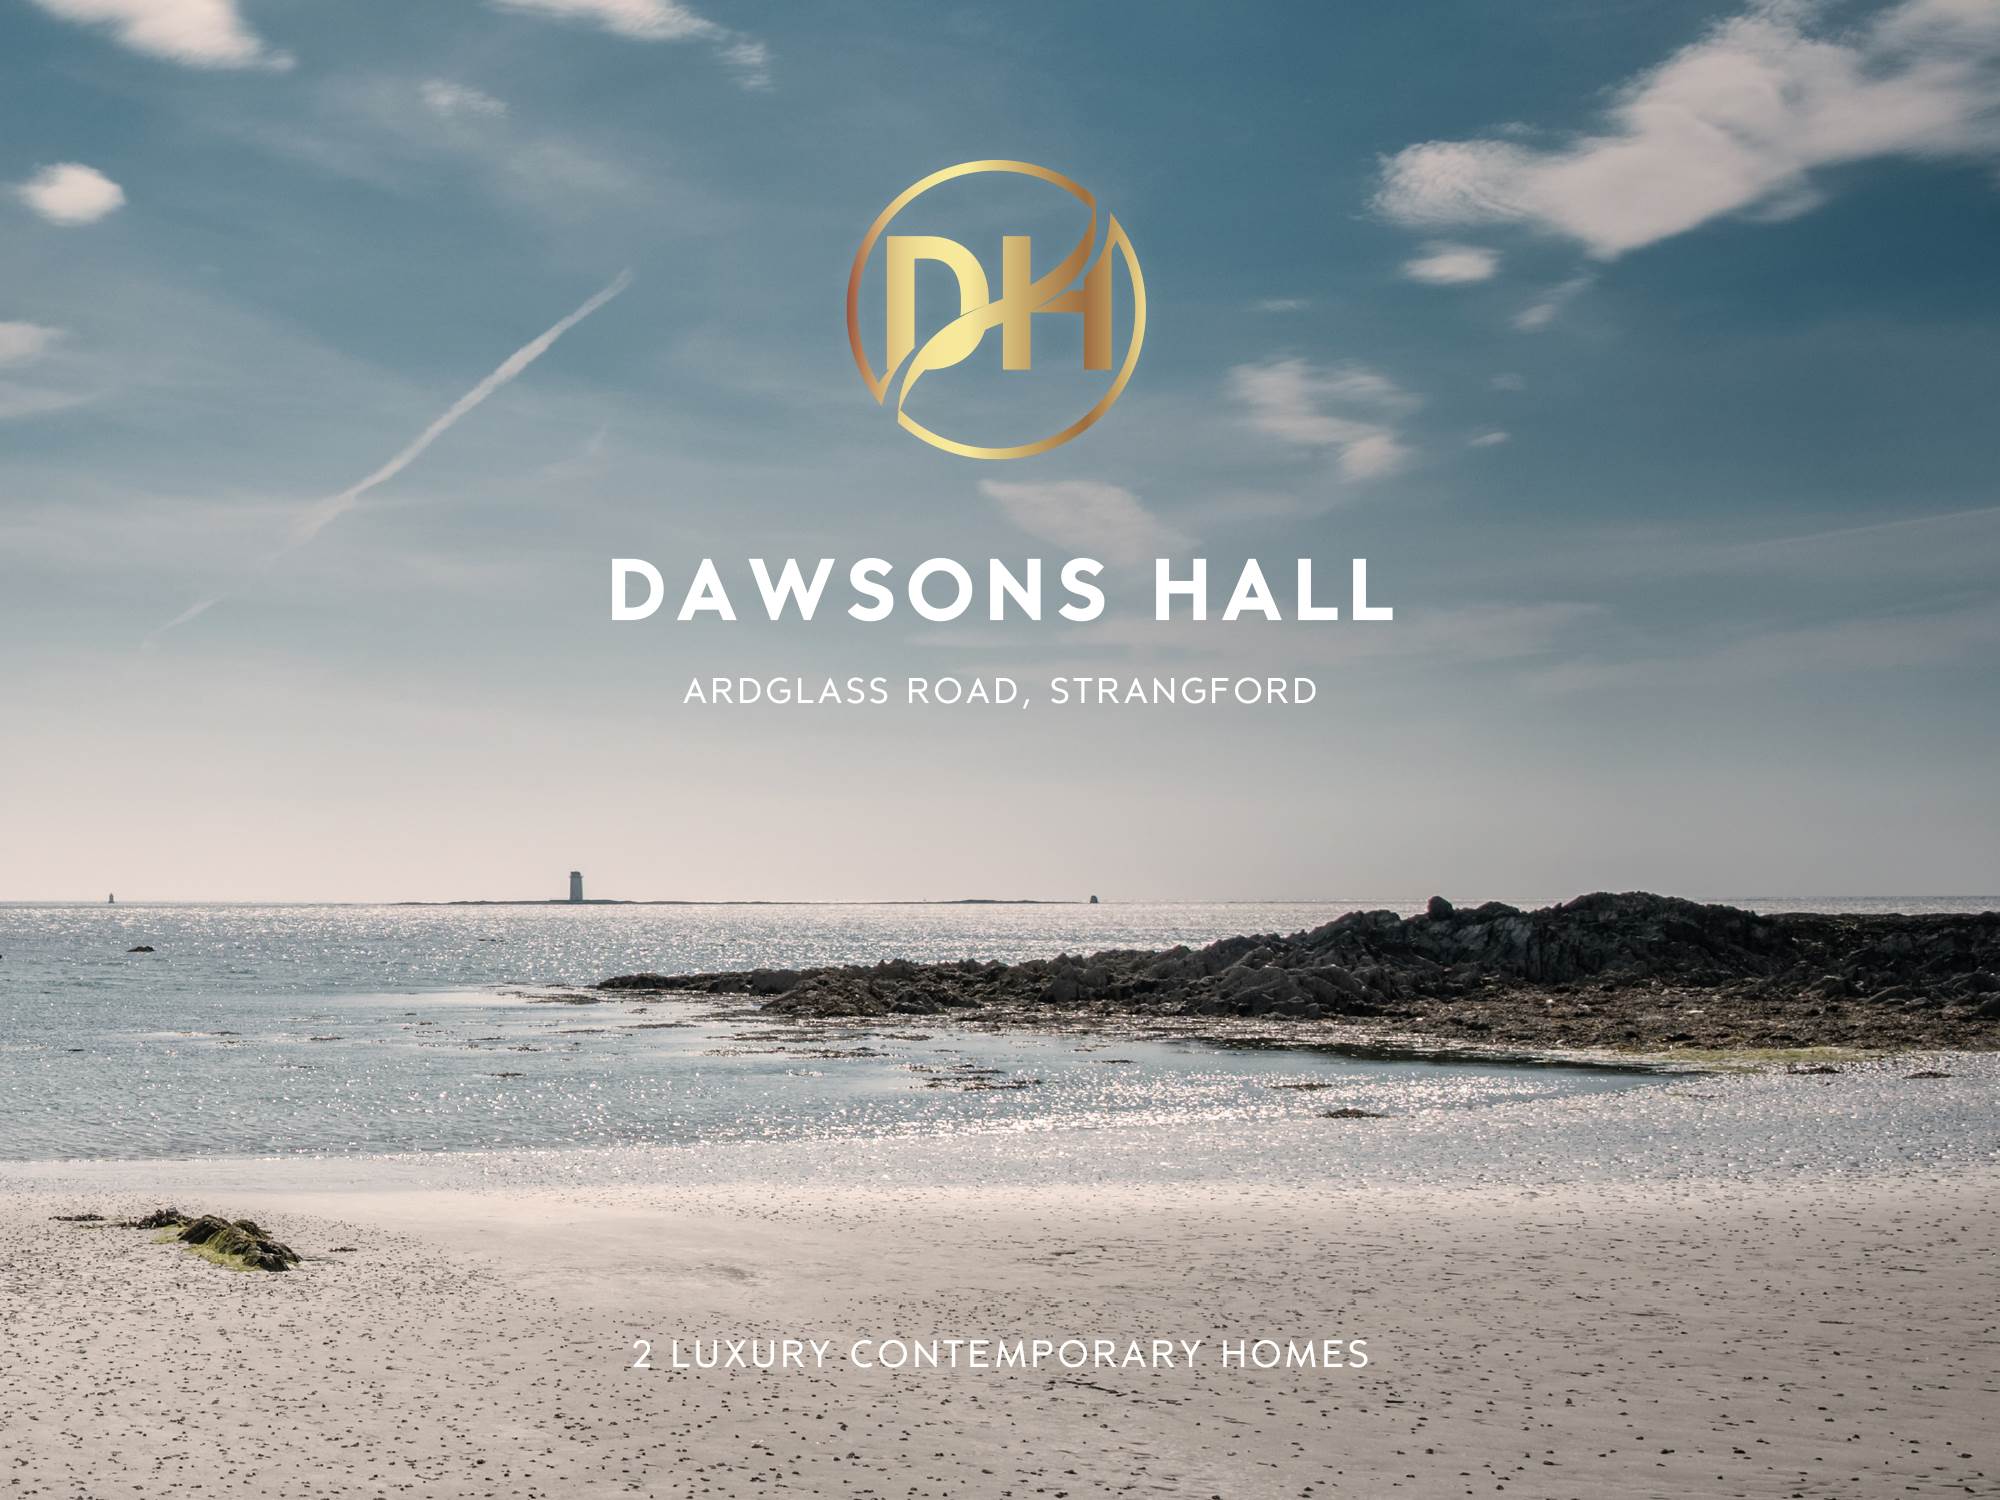 Dawsons Hall